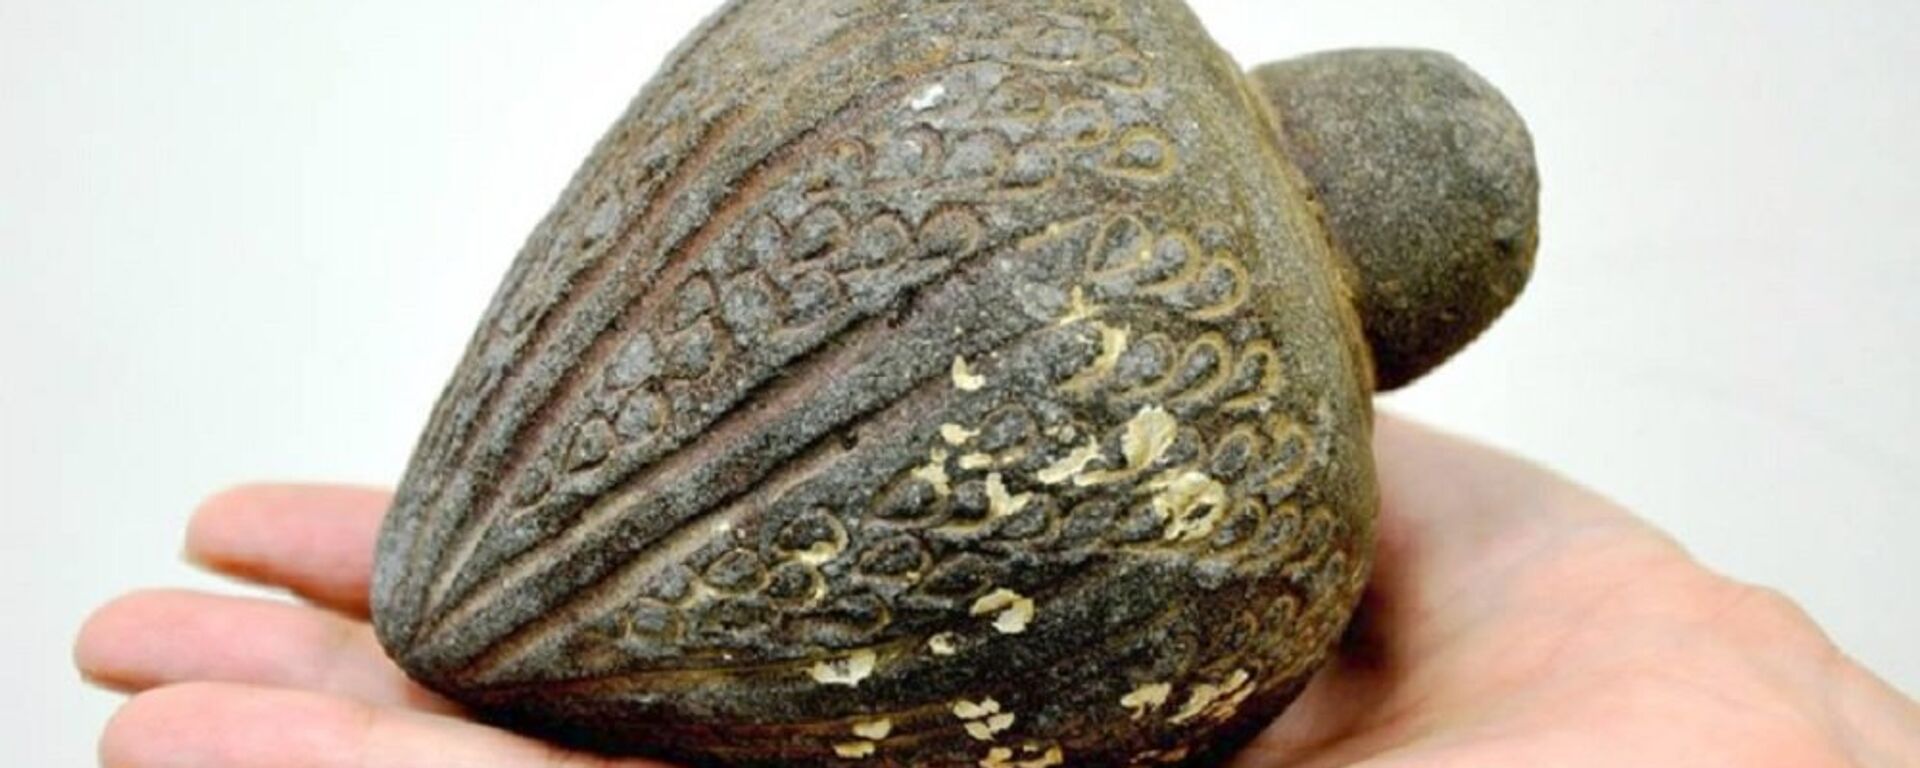 Ручна граната, један од артефаката пронађених у мору и предатих Израелској агенцији за антиквитете - Sputnik Србија, 1920, 27.08.2016